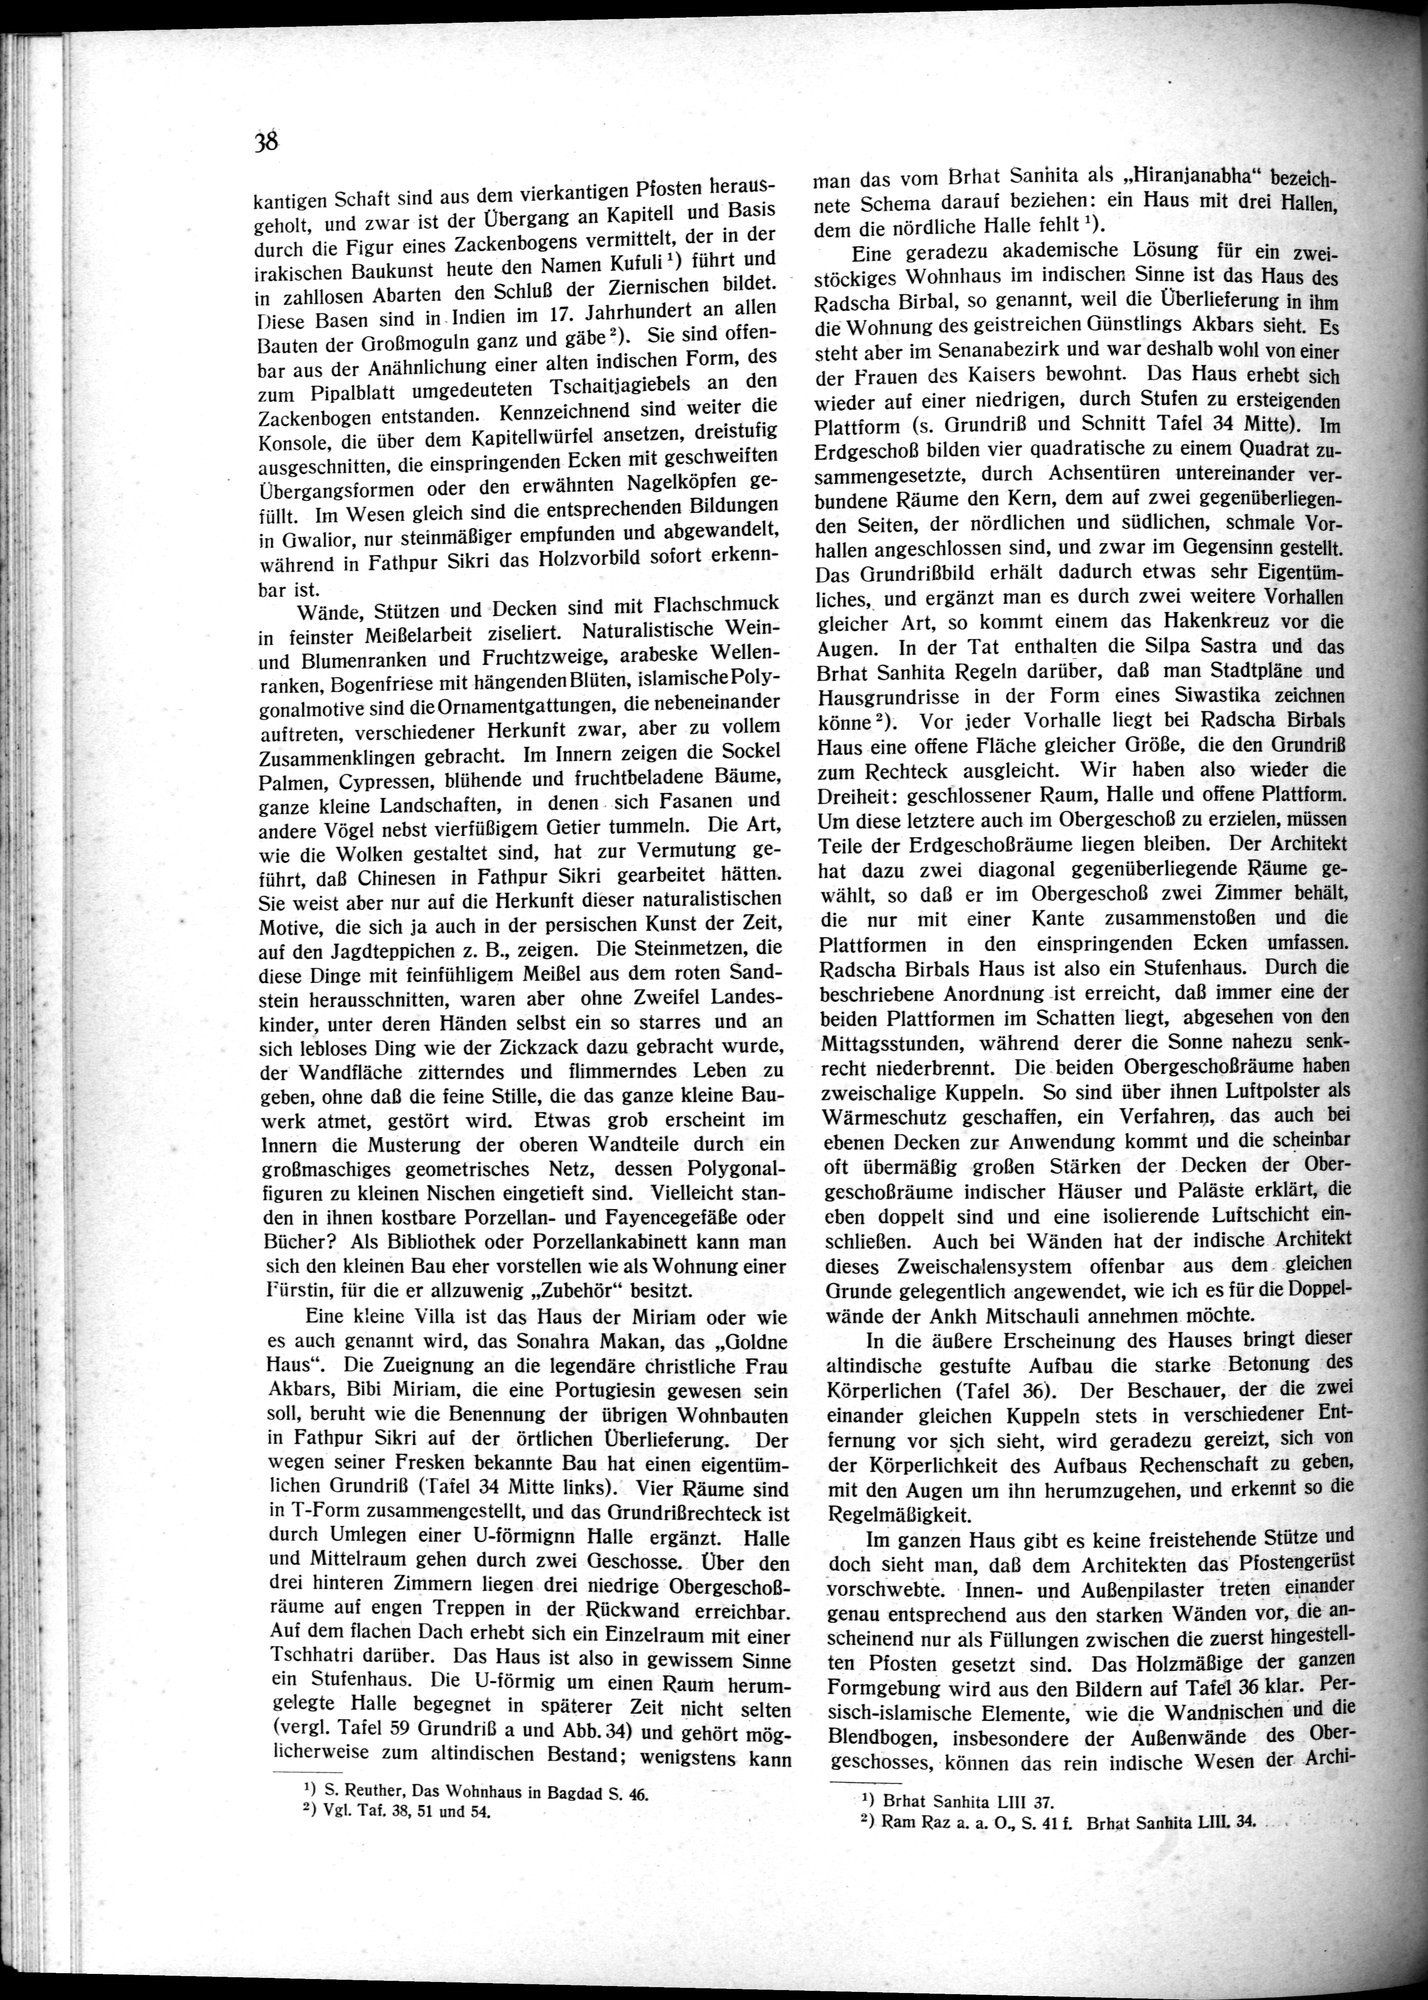 Indische Palaste und Wohnhauser : vol.1 / Page 48 (Grayscale High Resolution Image)